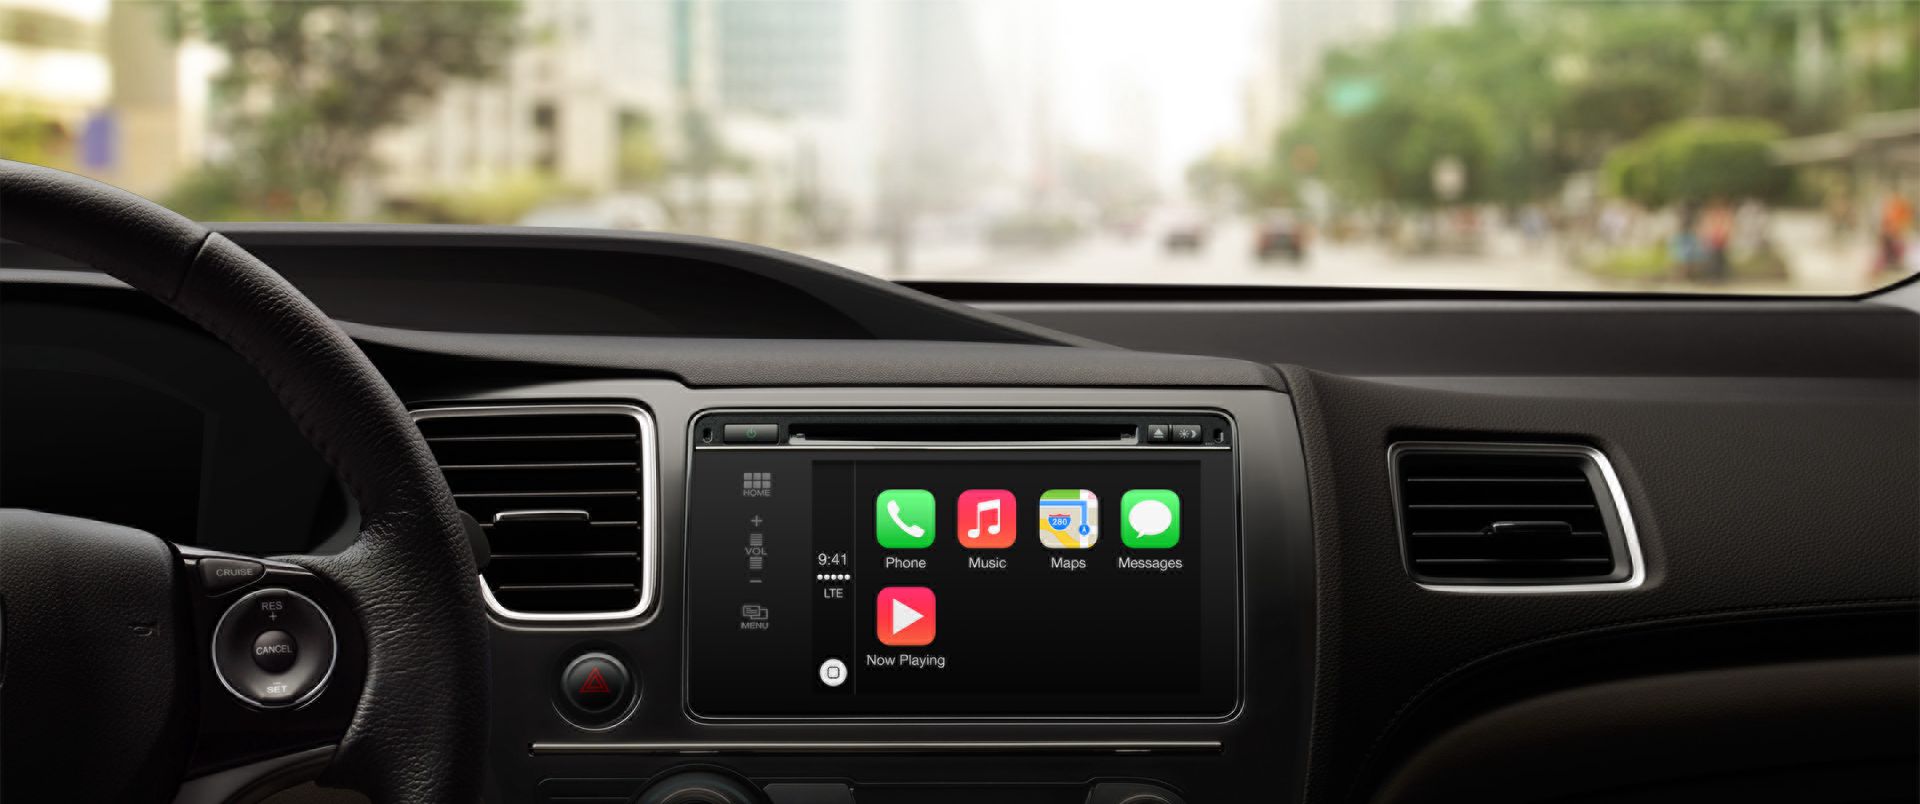 苹果正式推出车载服务CarPlay 法拉利奔驰沃尔沃将于本周首批试用